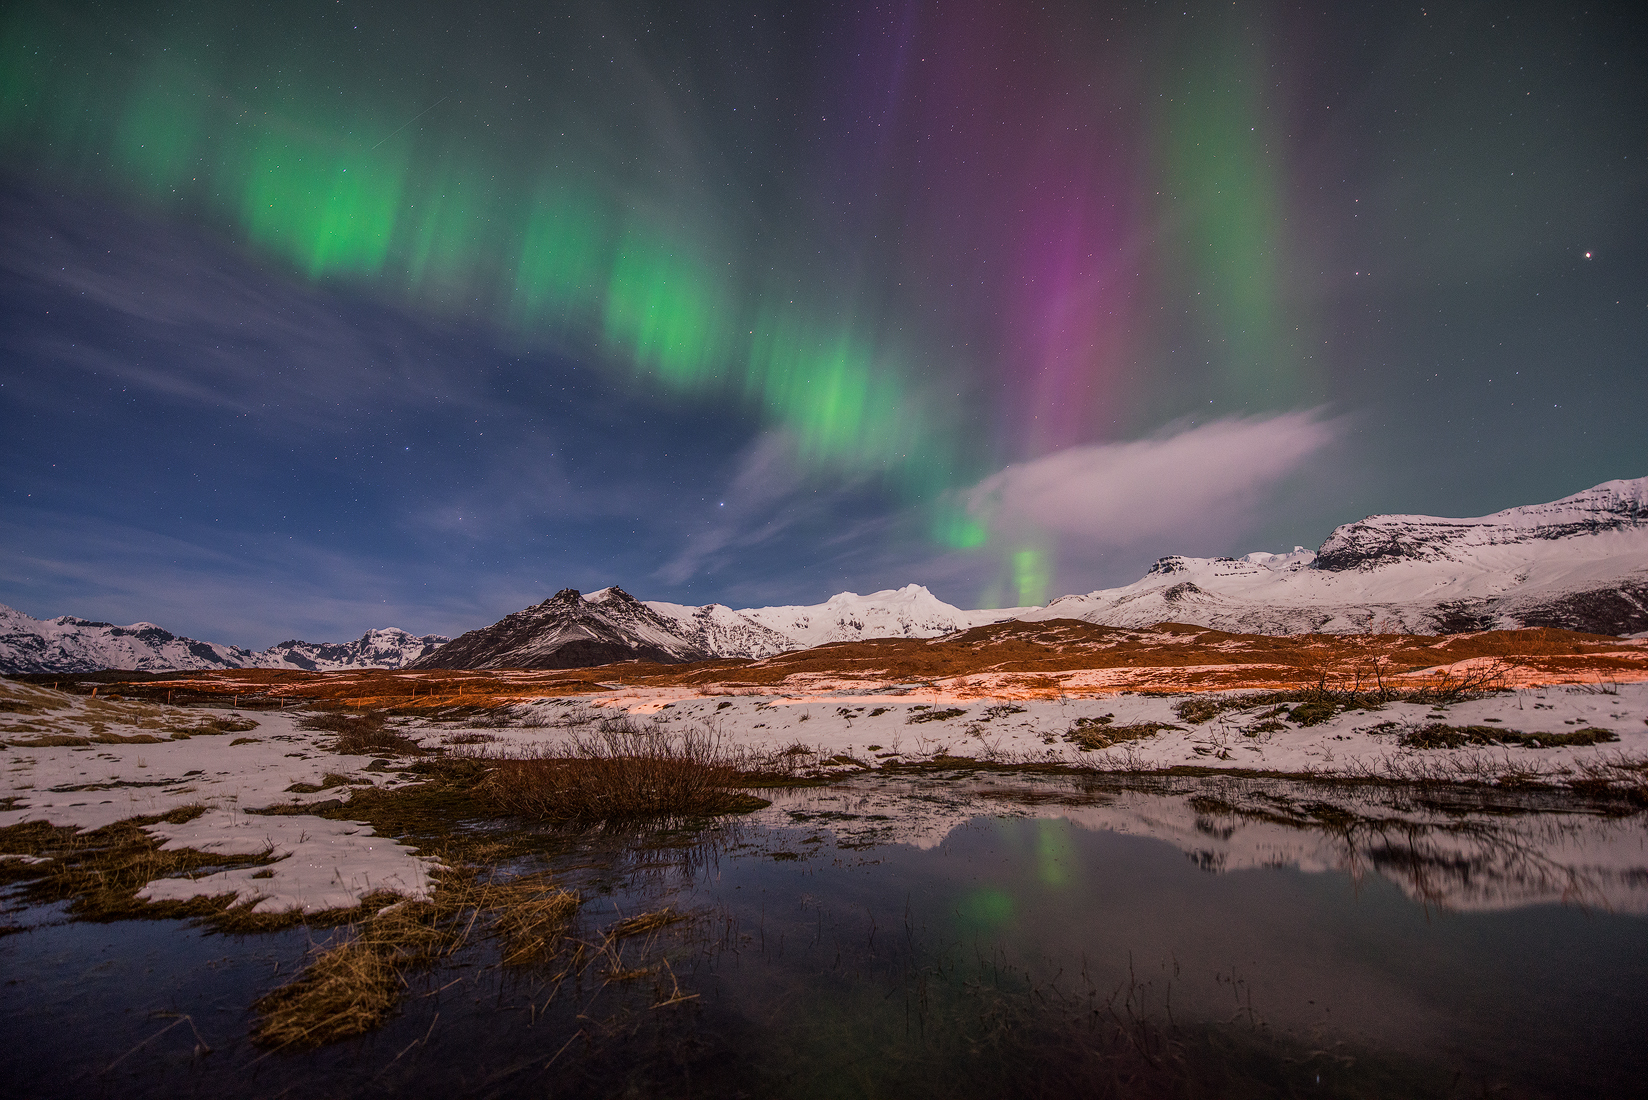 Islands snölandskap på vintern bildar en magisk miljö där man kan förundras över norrskenet.